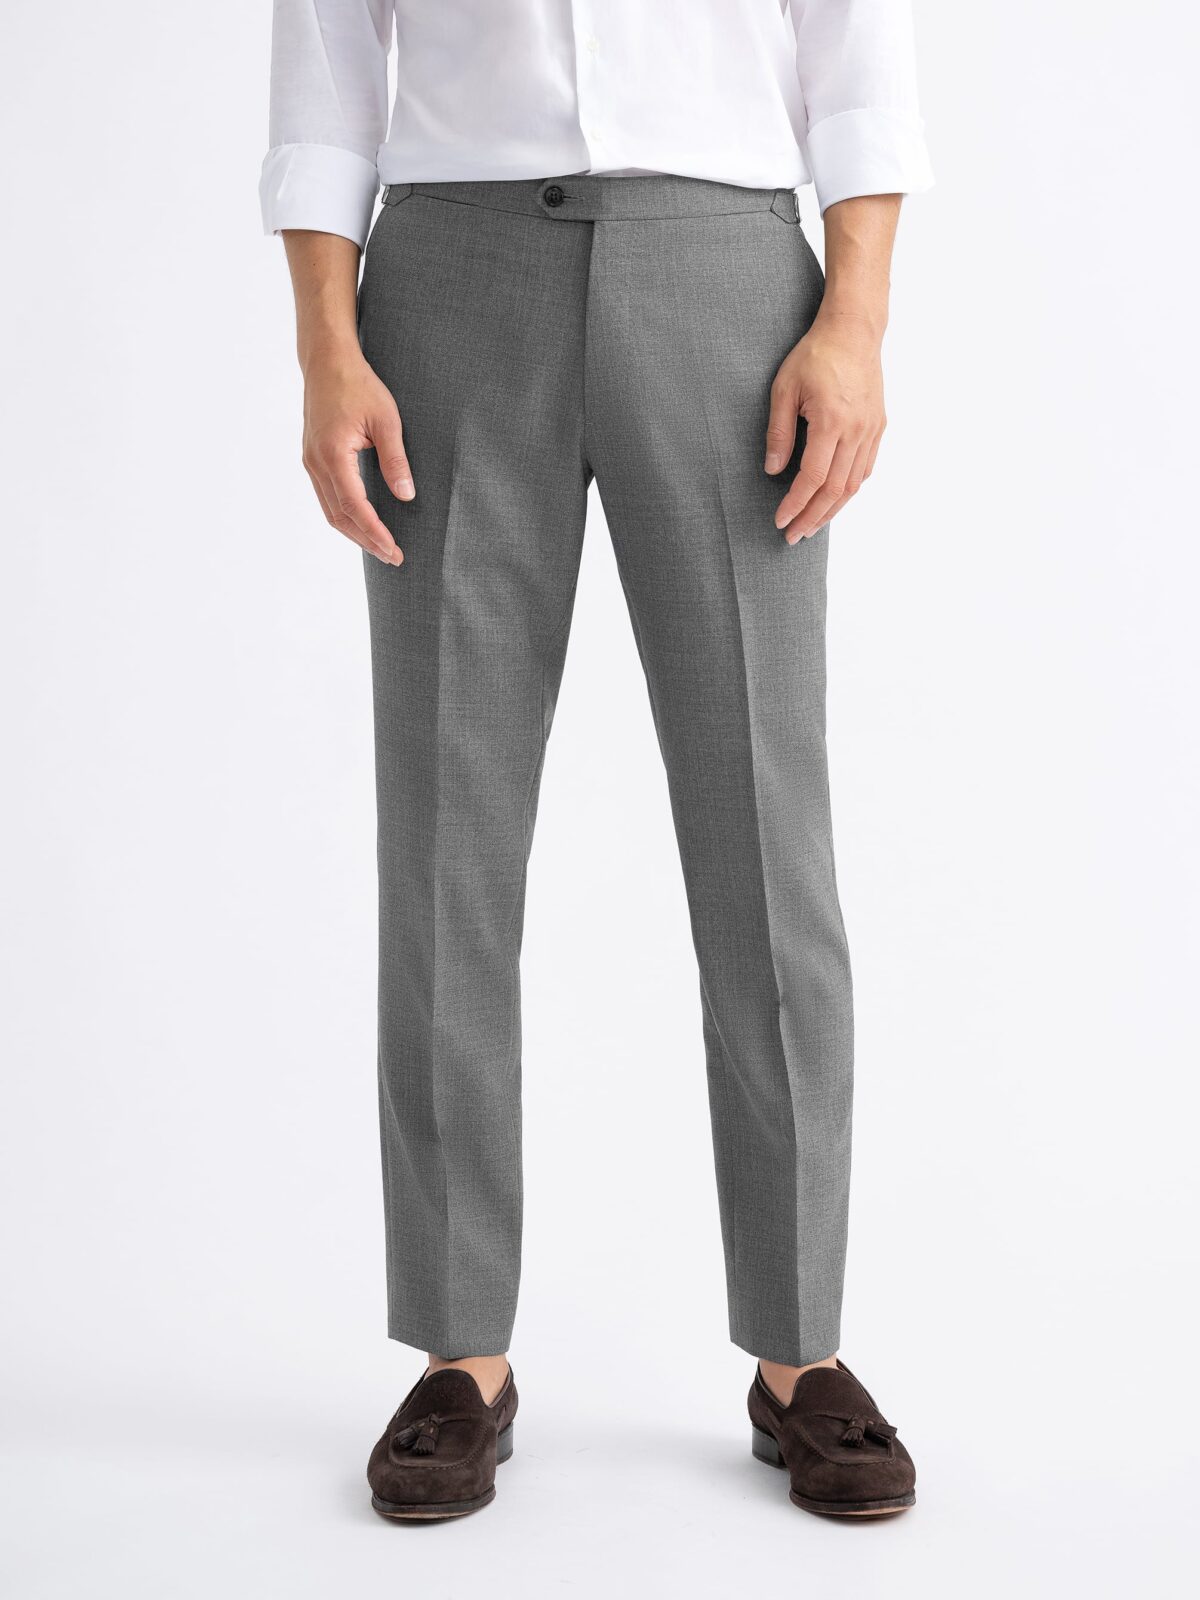 股上48Brushed Fleece Pants VI-2972-04-gray